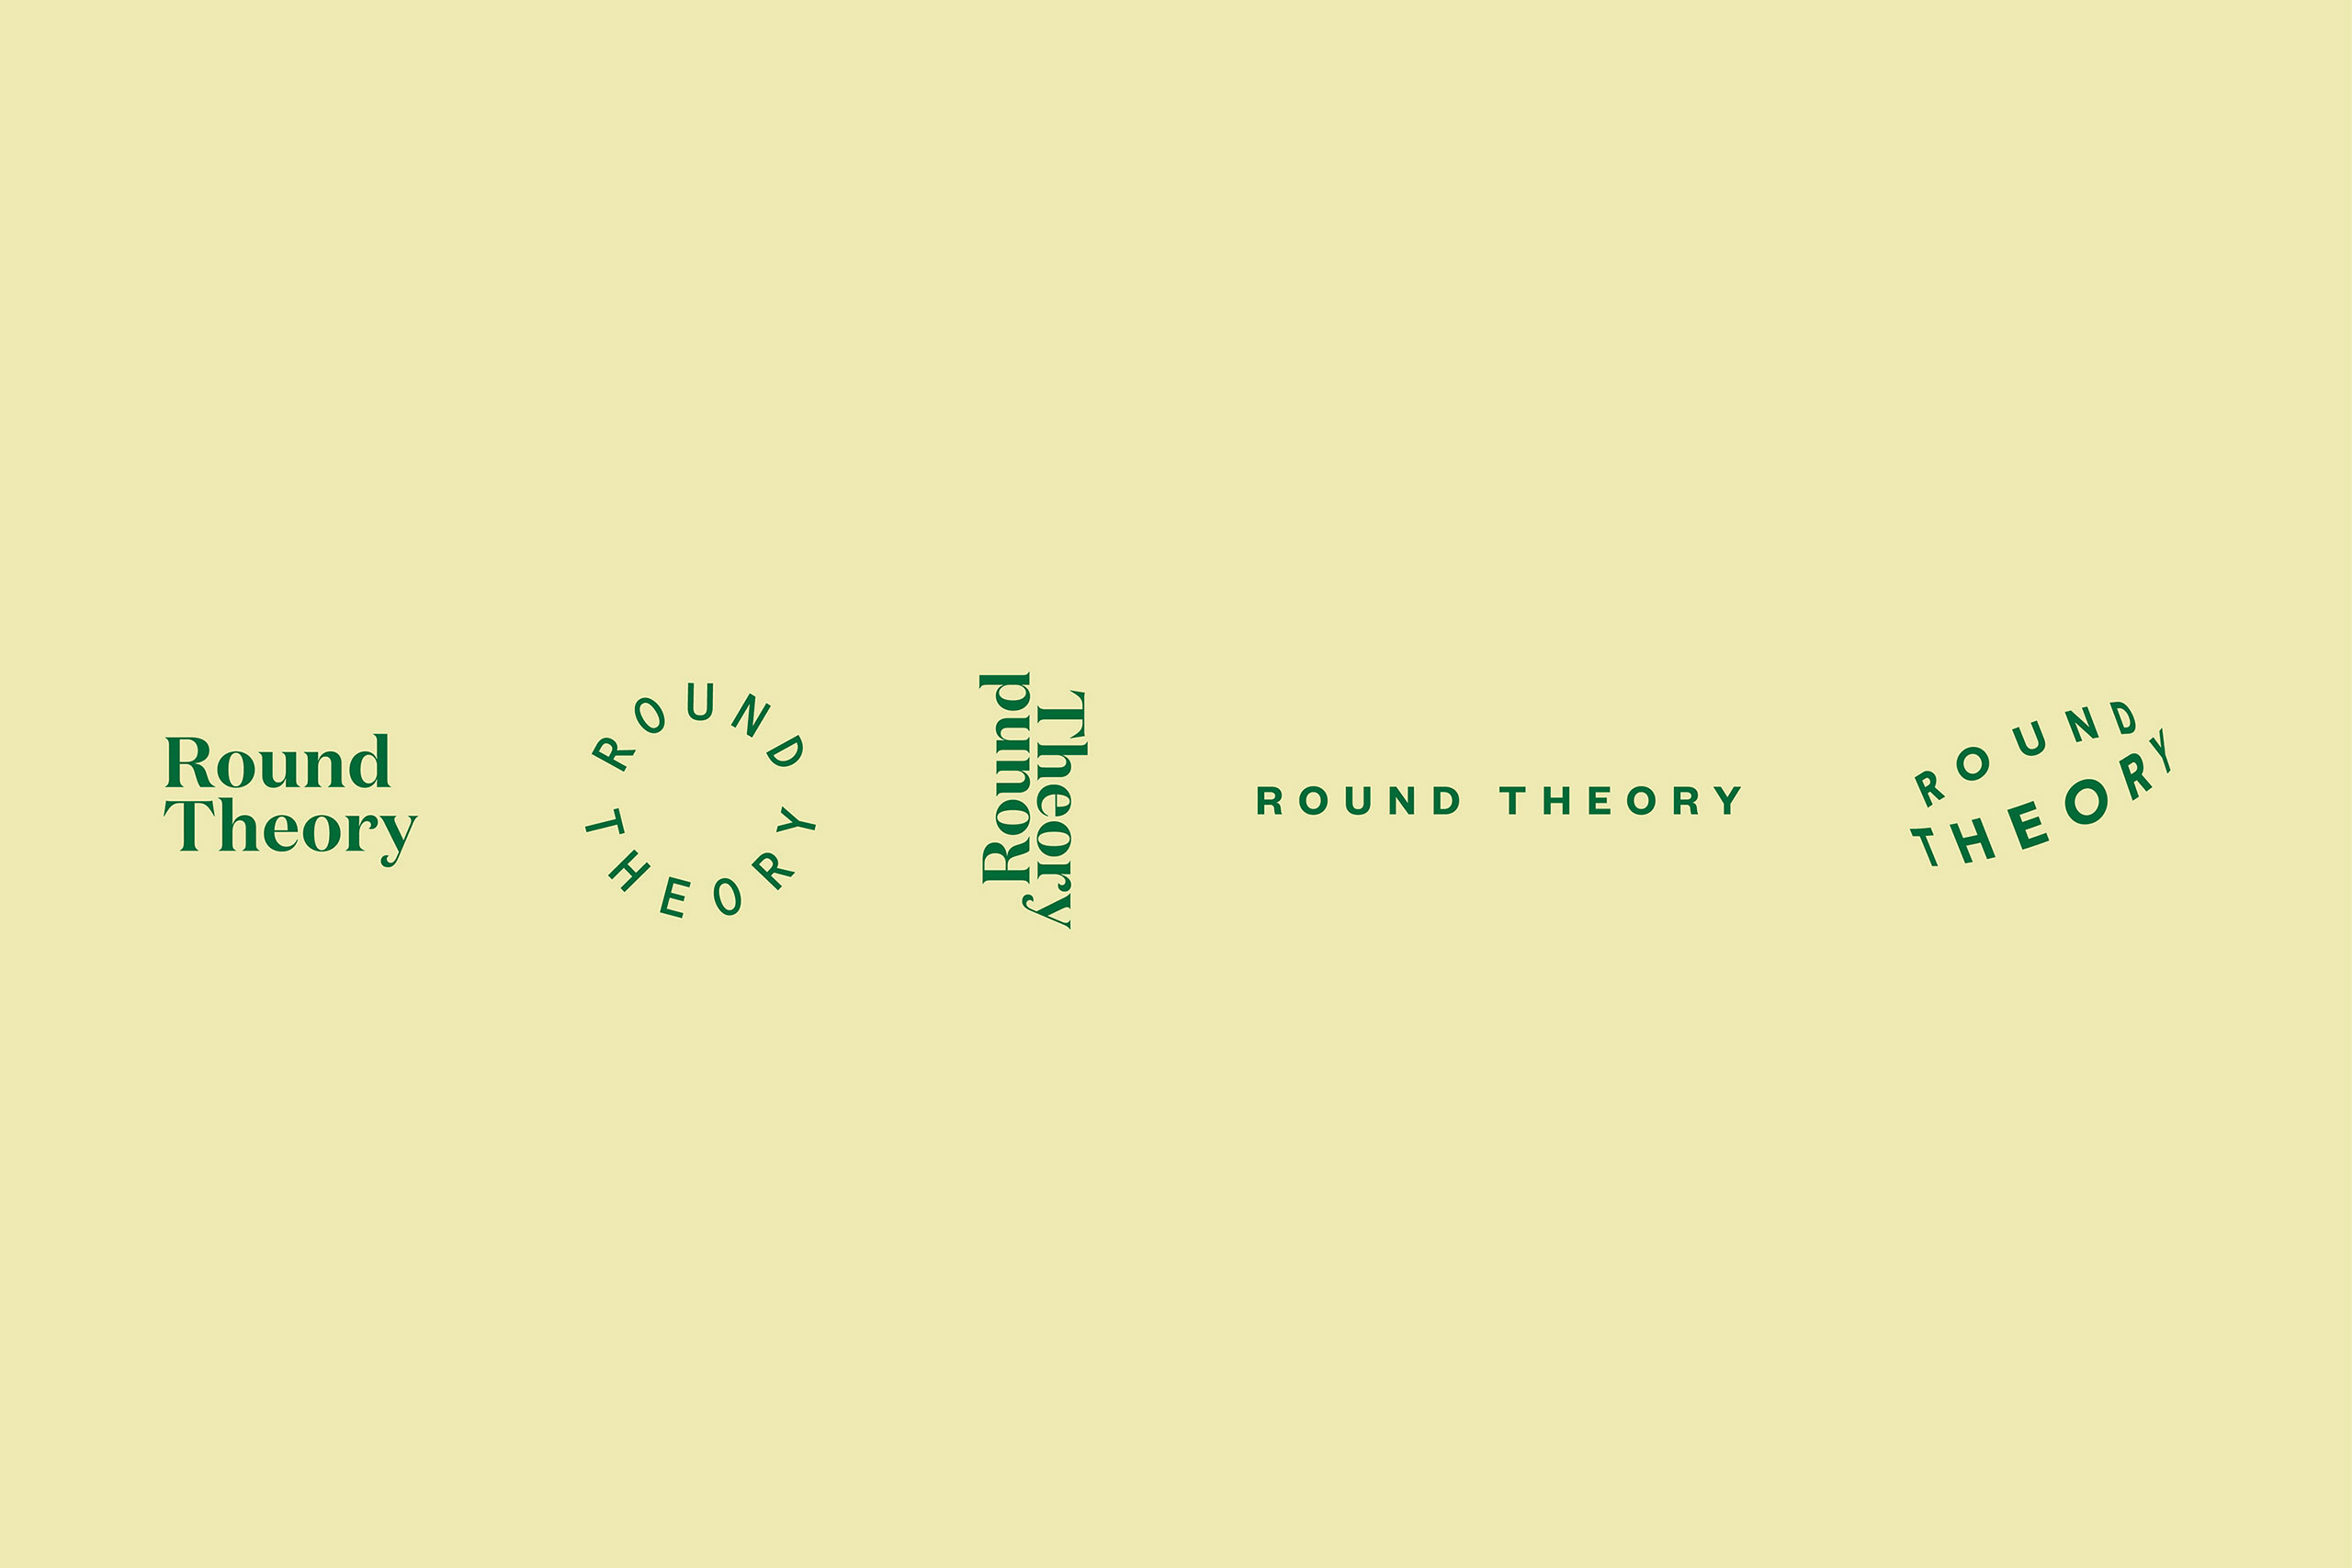 Kātoitoi-x-ONE-Round-Theory-BRAND2